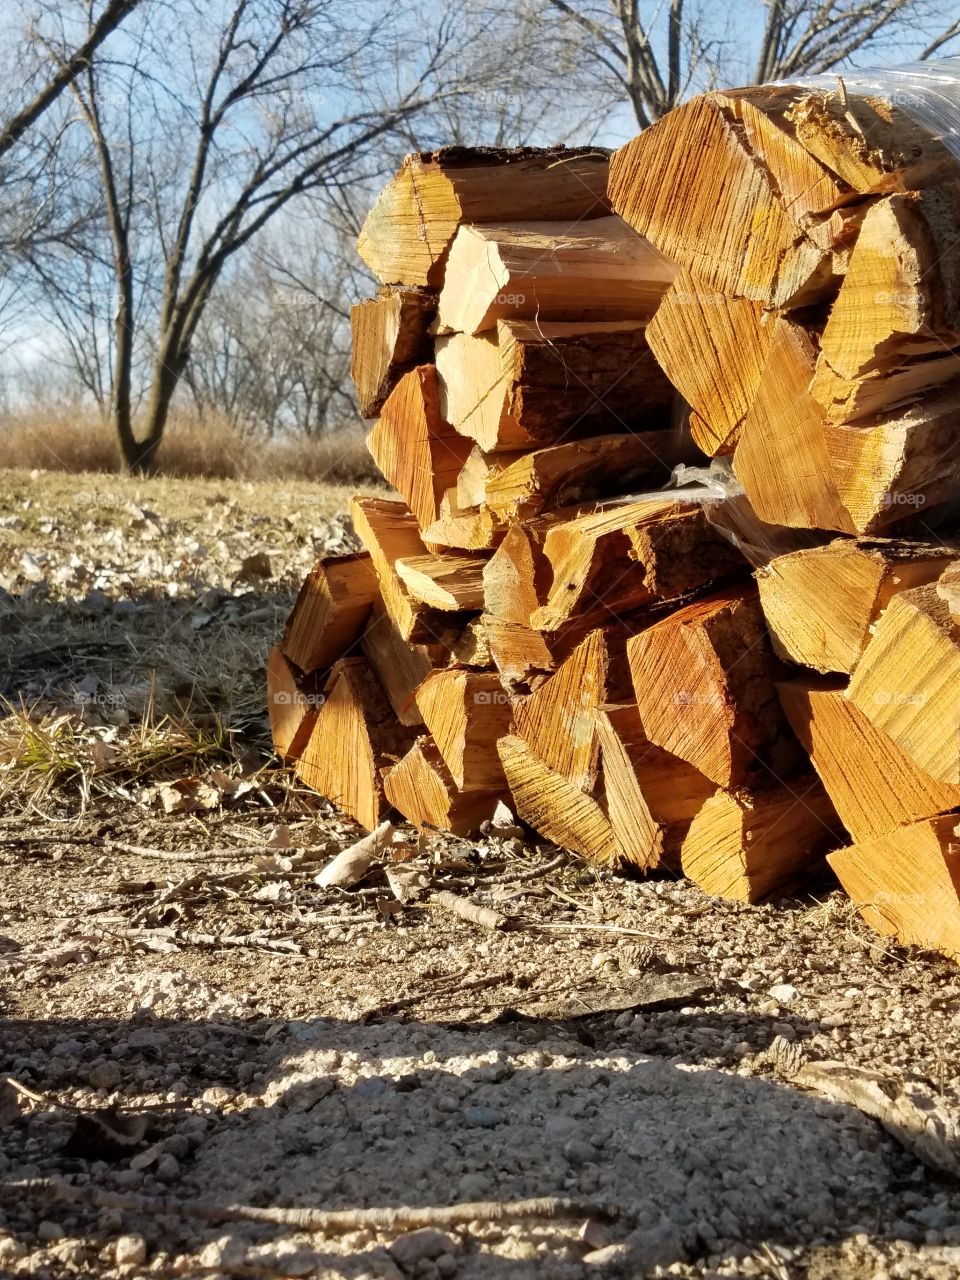 Got wood?